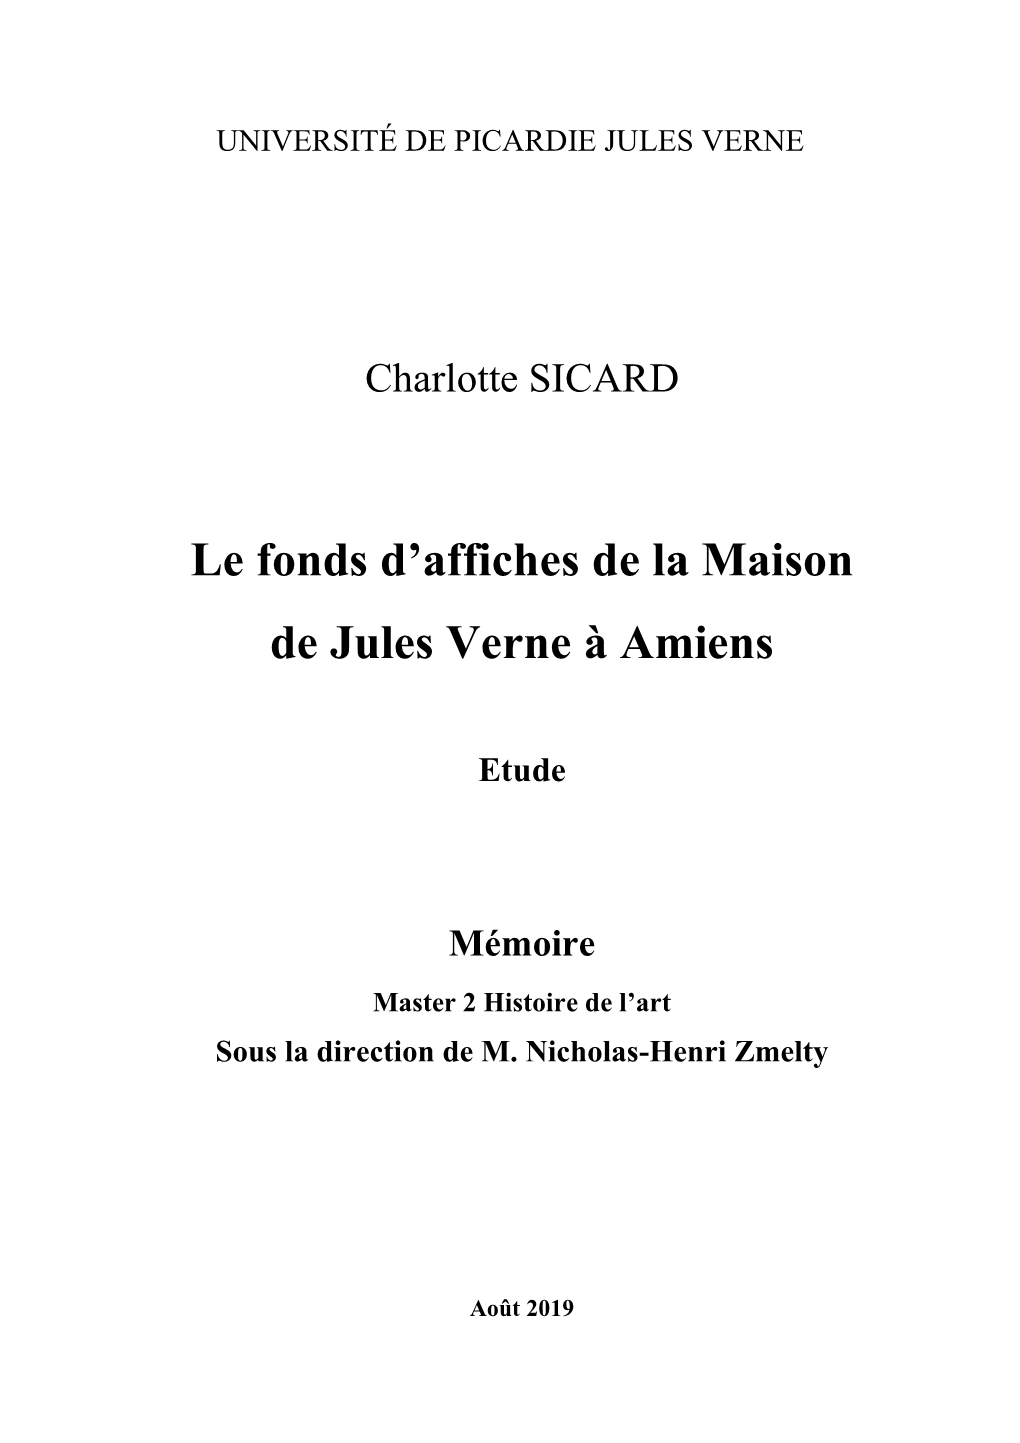 Le Fonds D'affiches De La Maison De Jules Verne À Amiens